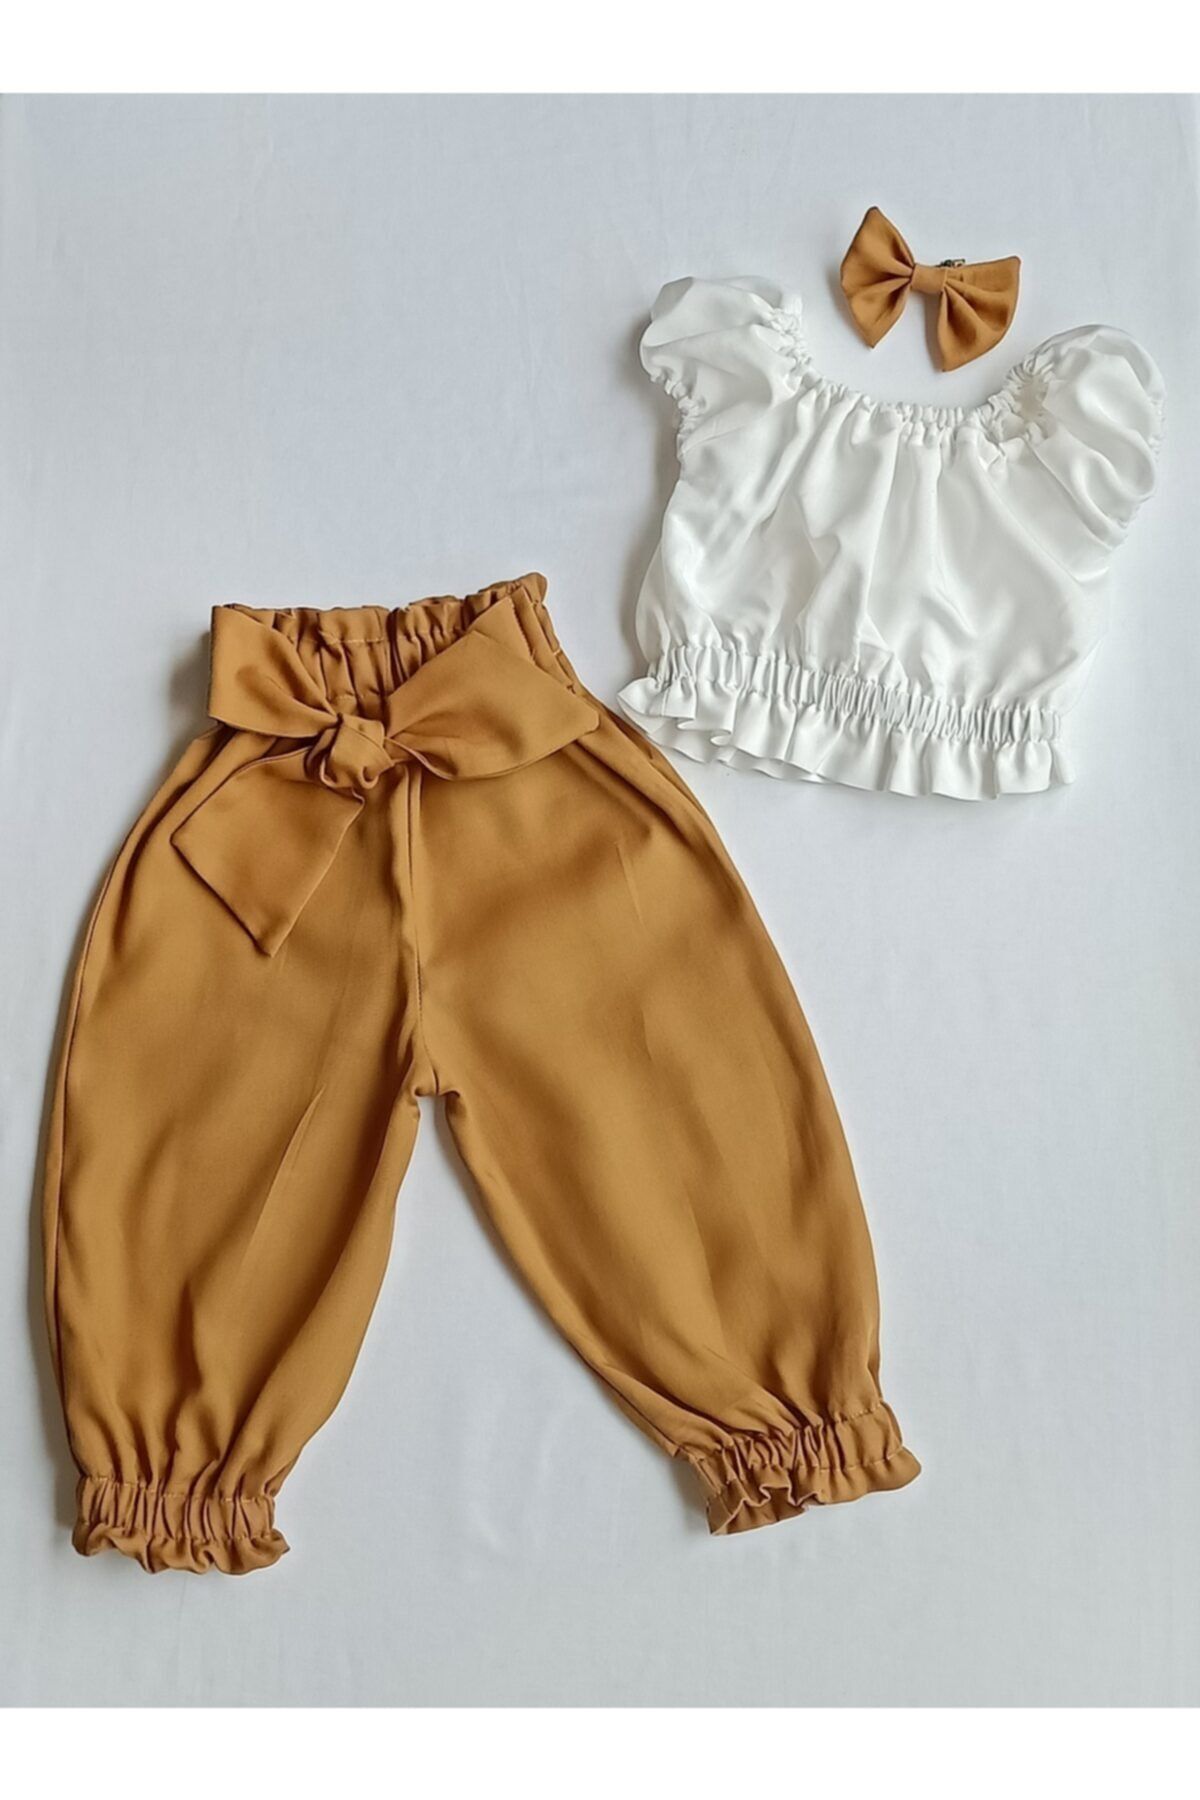 moms and babies Kız Bebek Tarçın Büstiyerli Pantolon Takım